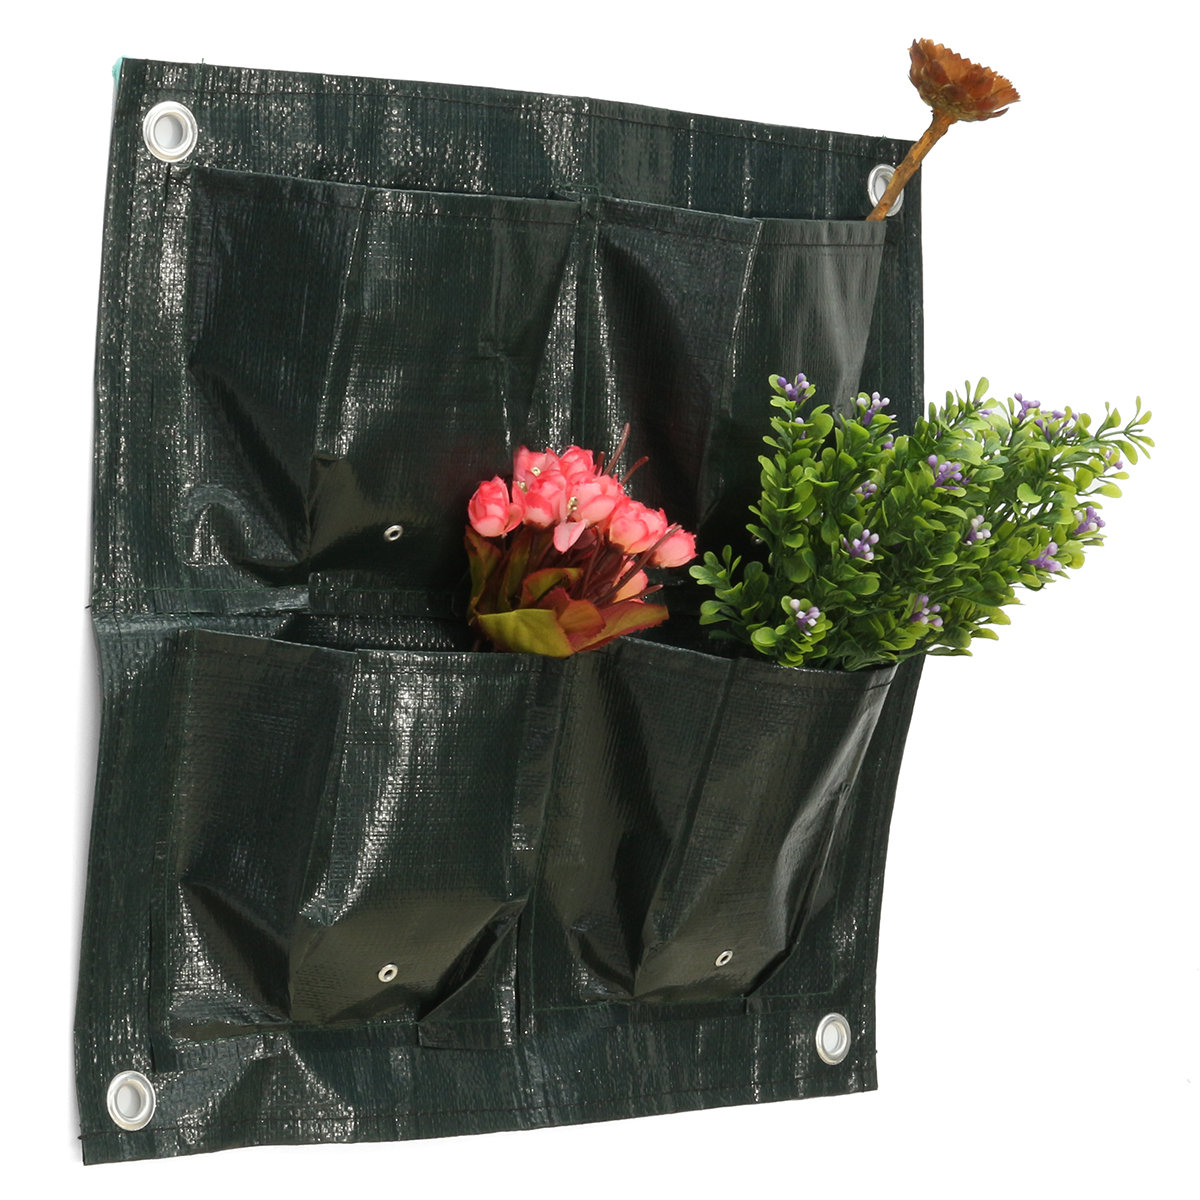 42x42cm 4 Taschen Garten Blumen Pflanzen Bepflanzung Tasche Wachsen Taschen Topf